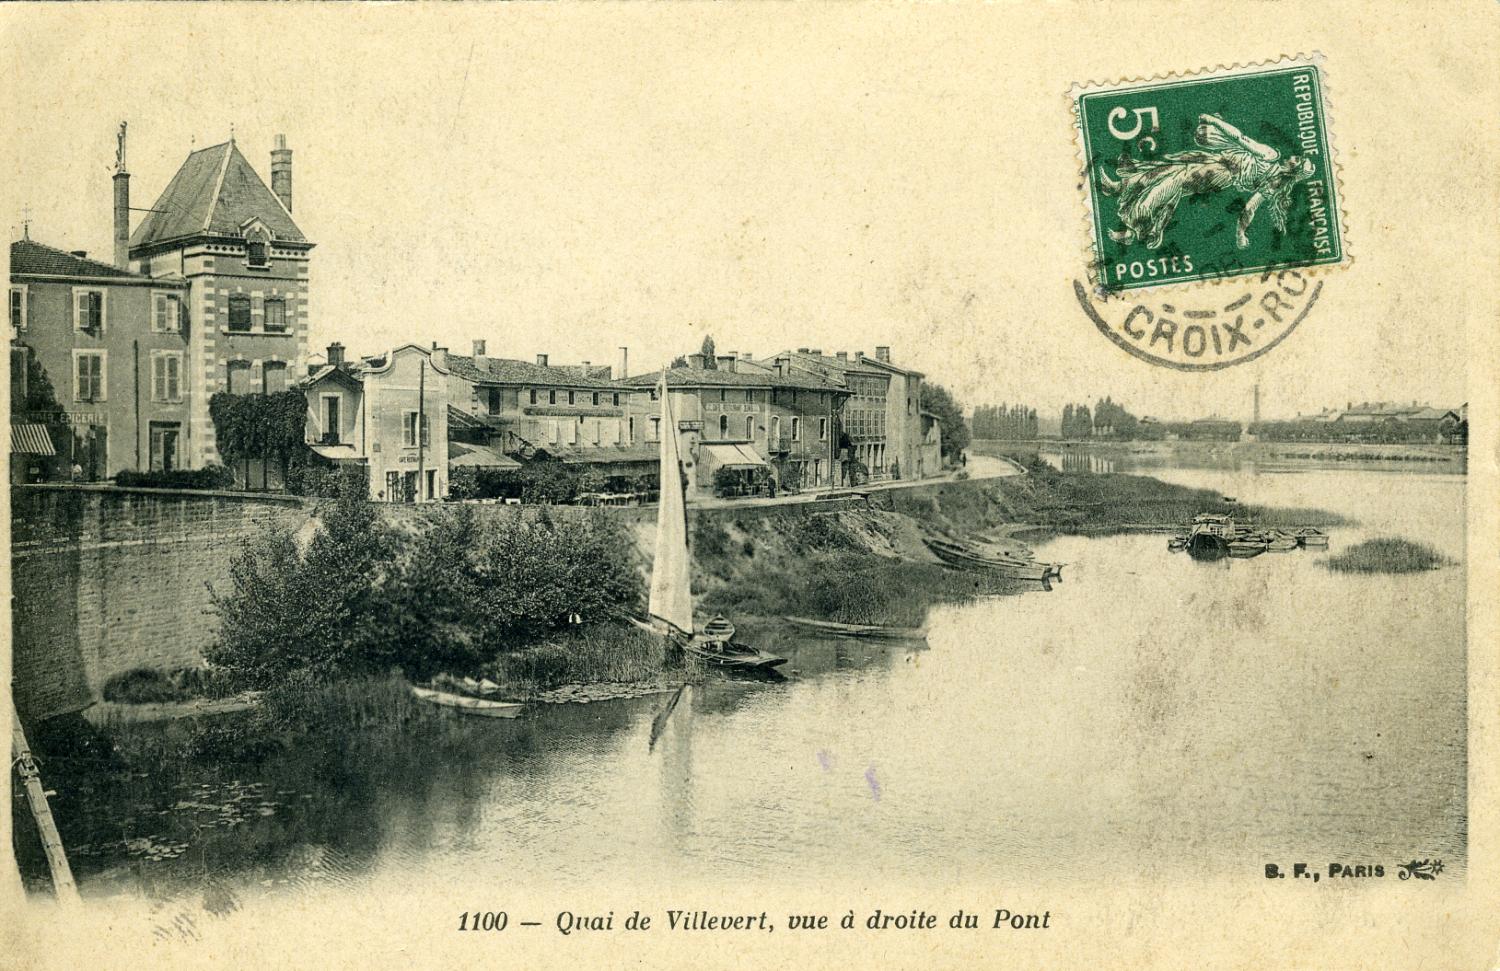 Quai de Villevert, vue à droite du Pont